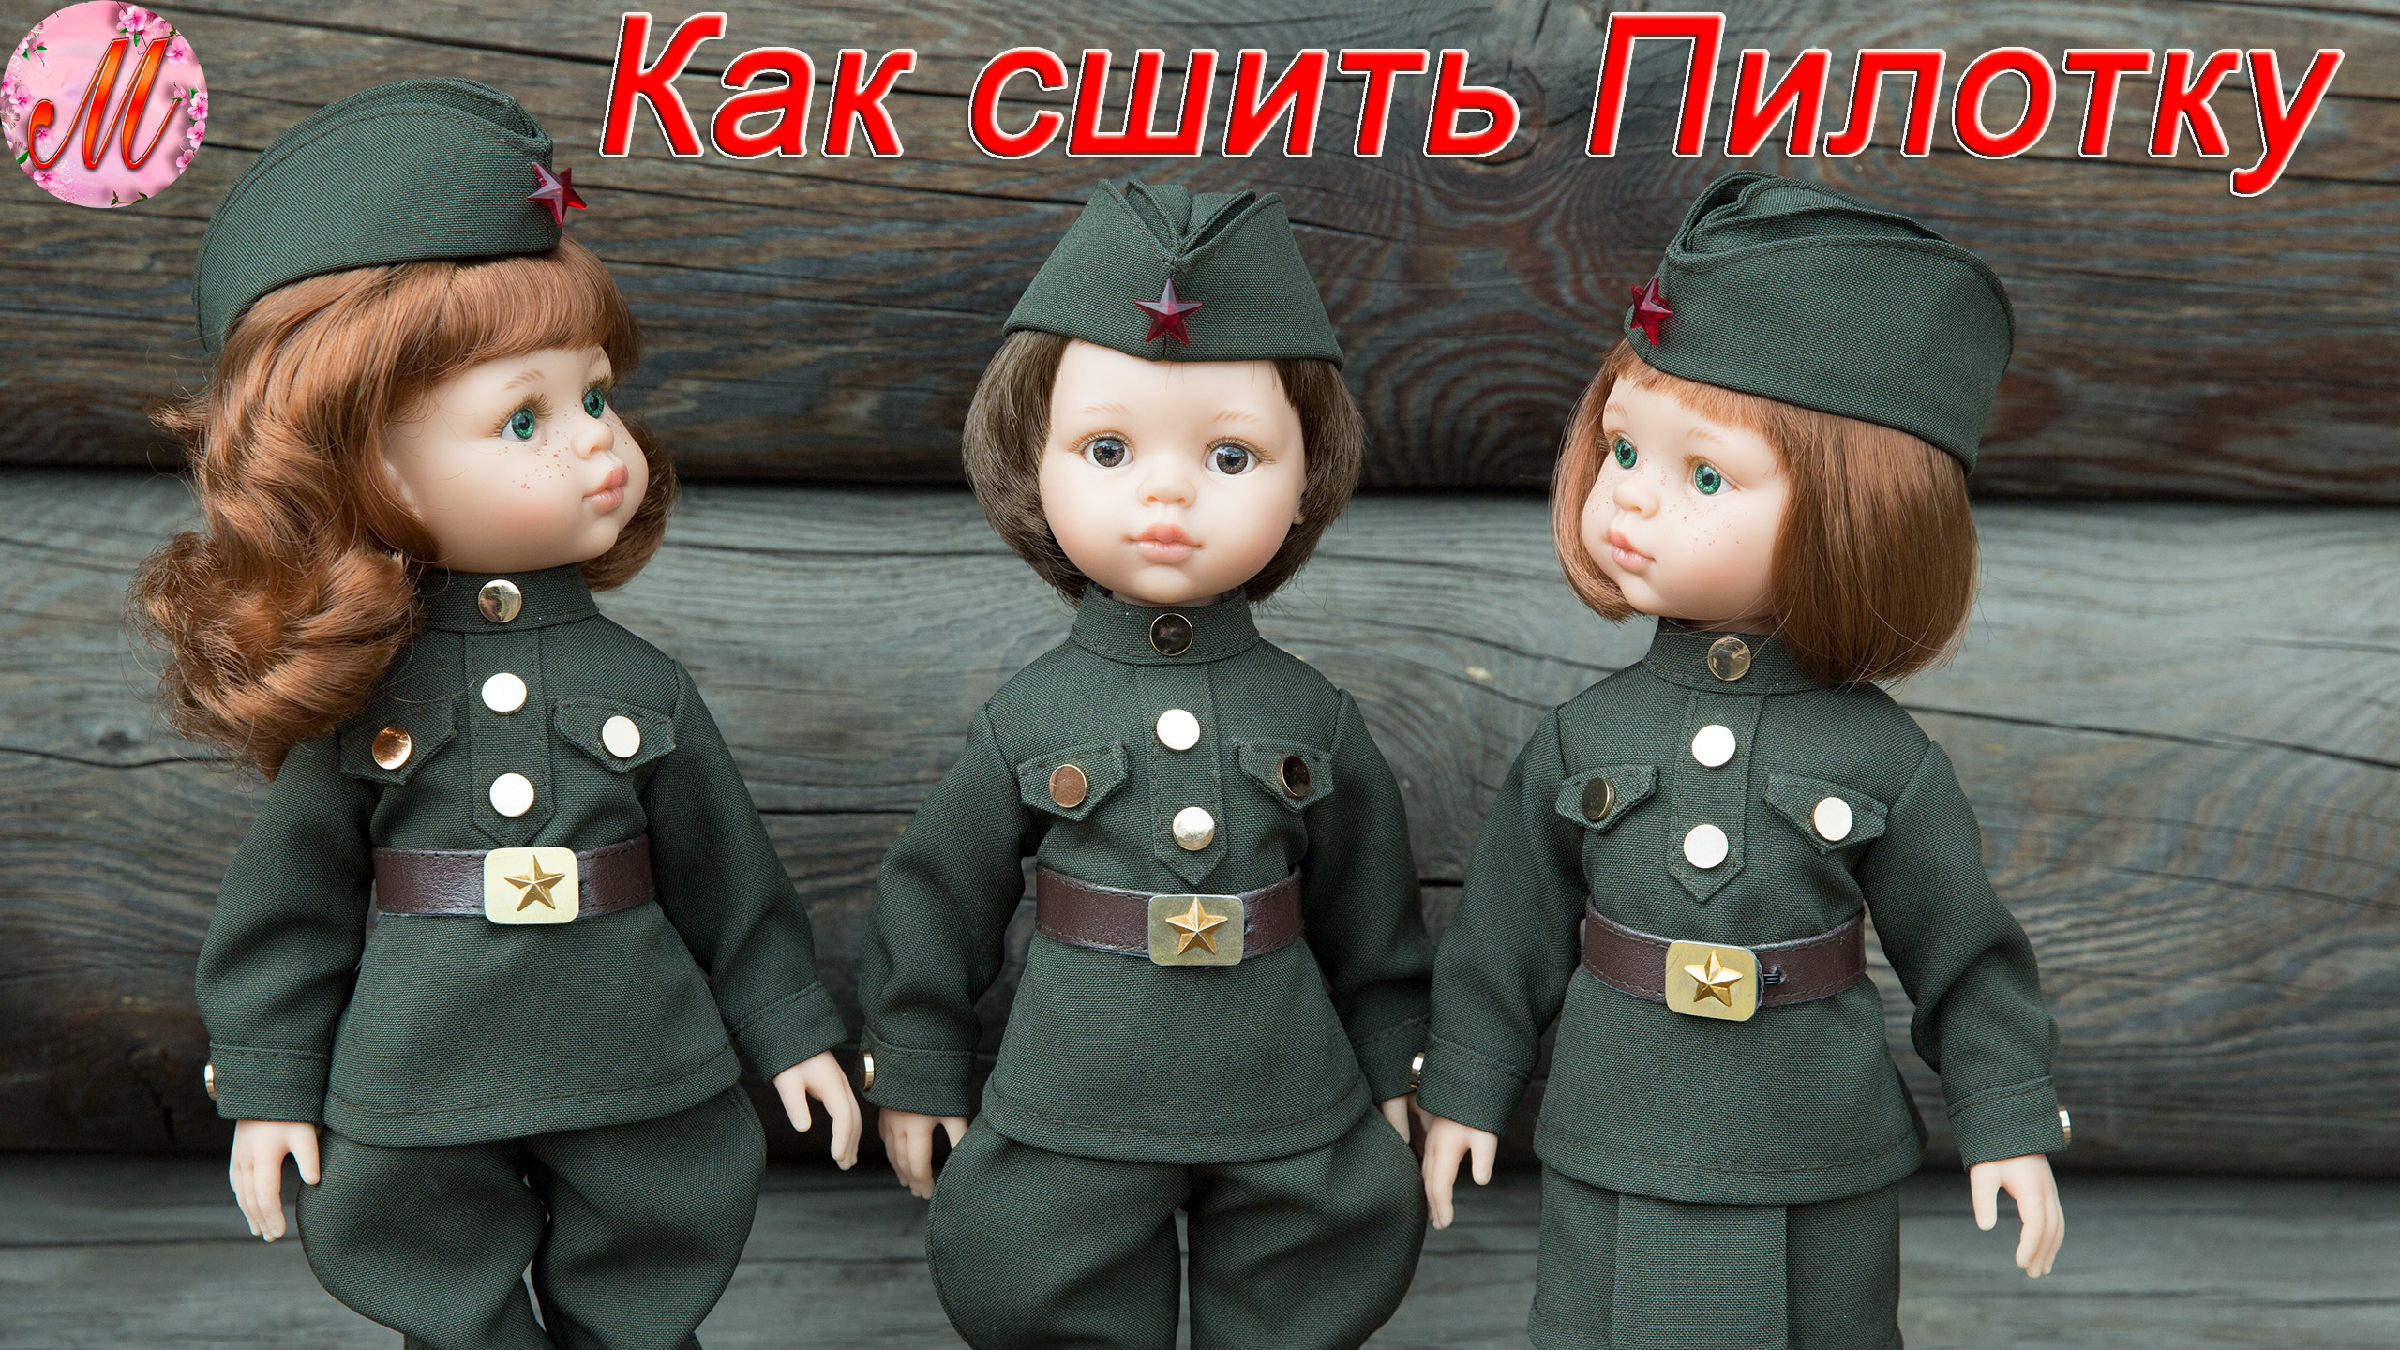 Военная форма на Паола Рейна. Кукла Паола Рейна в военной форме. Кукла в солдатской форме. Интерьерная кукла в военной форме.